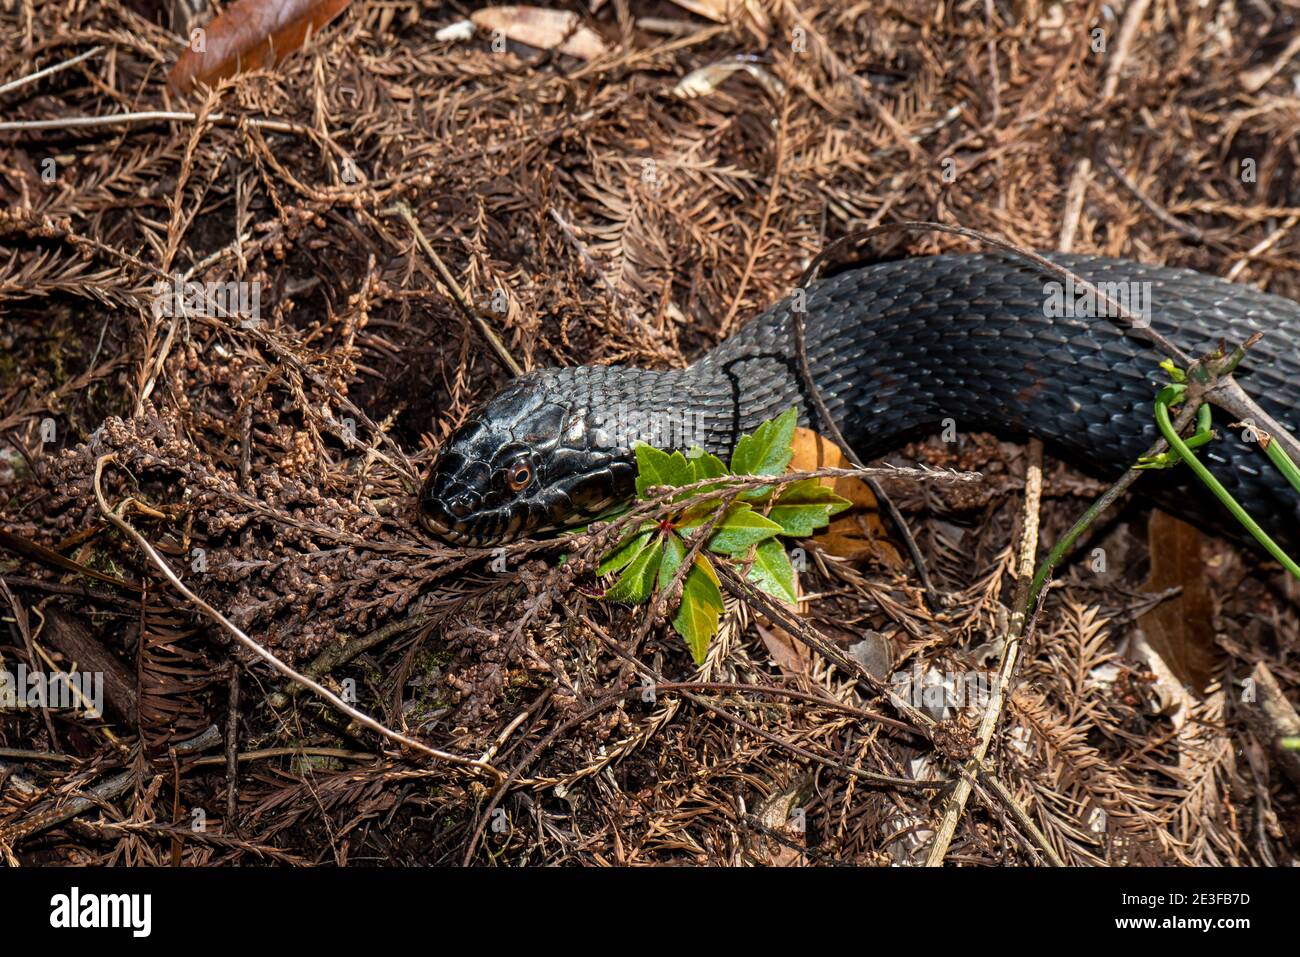 Copeland, Floride. Parc national de la réserve de Fakahatchee Strand. Vue rapprochée d'un serpent d'eau à bande 'Nerodia fasciata' dans les Everglades. Banque D'Images